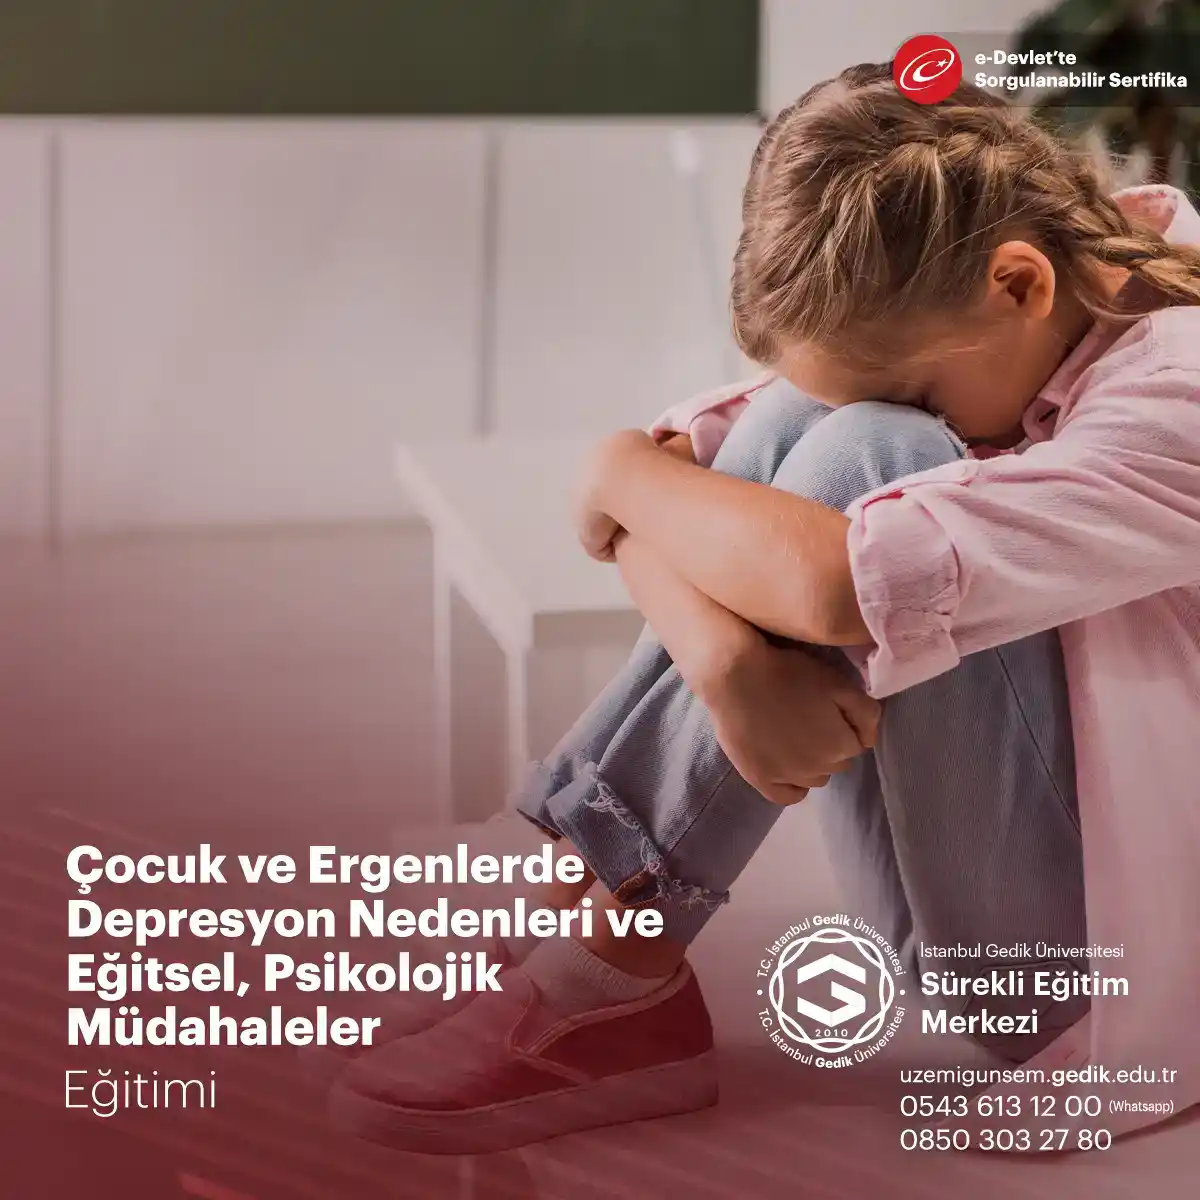 Depresyon, çocuk ve ergenlerde çok sık görülen bir psikiyatrik bozukluktur ve ciddi sonuçlara neden olabilir.